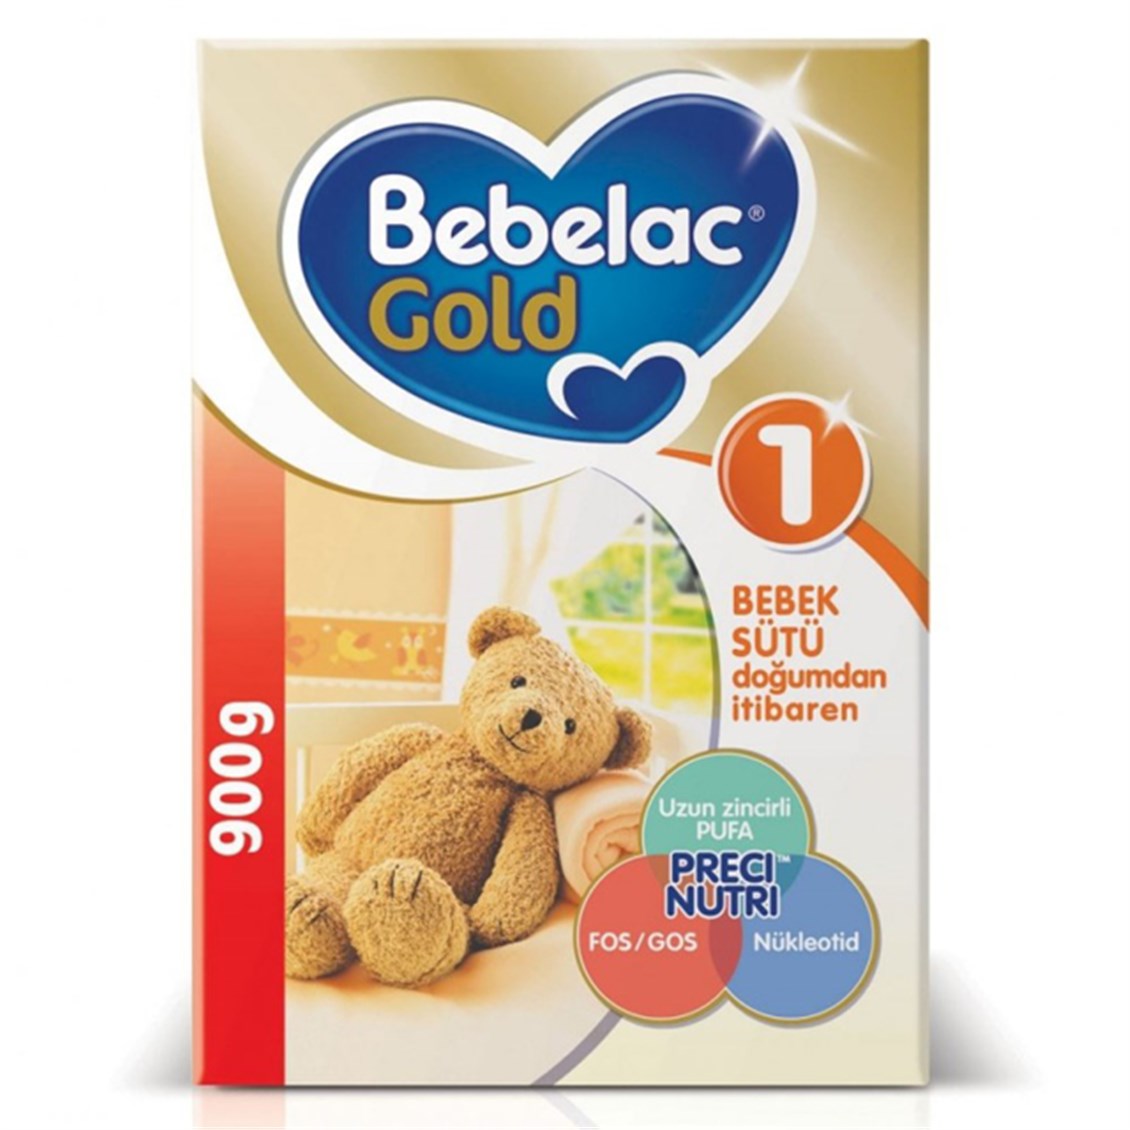 Bebelac Gold 1 - 900 gr - Onur Market